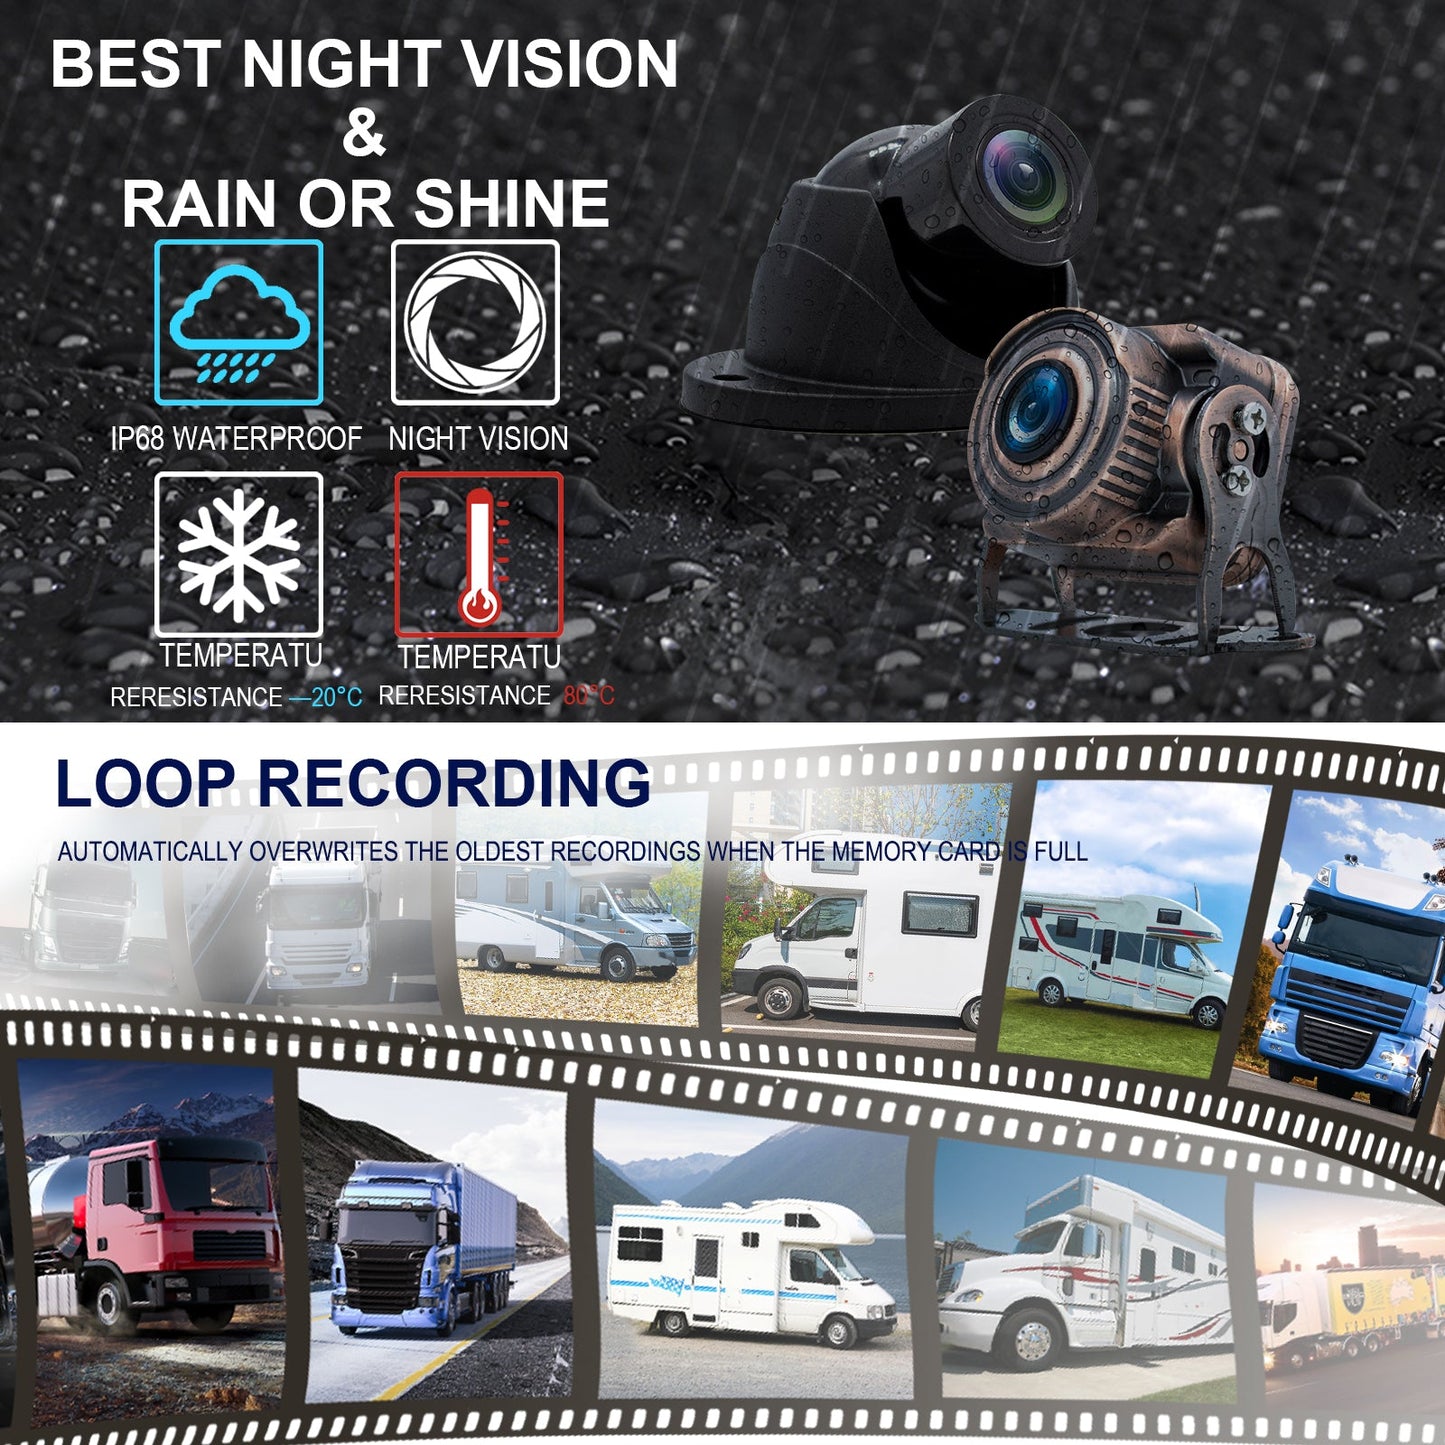 10.36 "moniteur DVR conduite enregistreur vidéo écran tactile pour RV camion Bus + 4 pièces caméra de recul Fedex Express